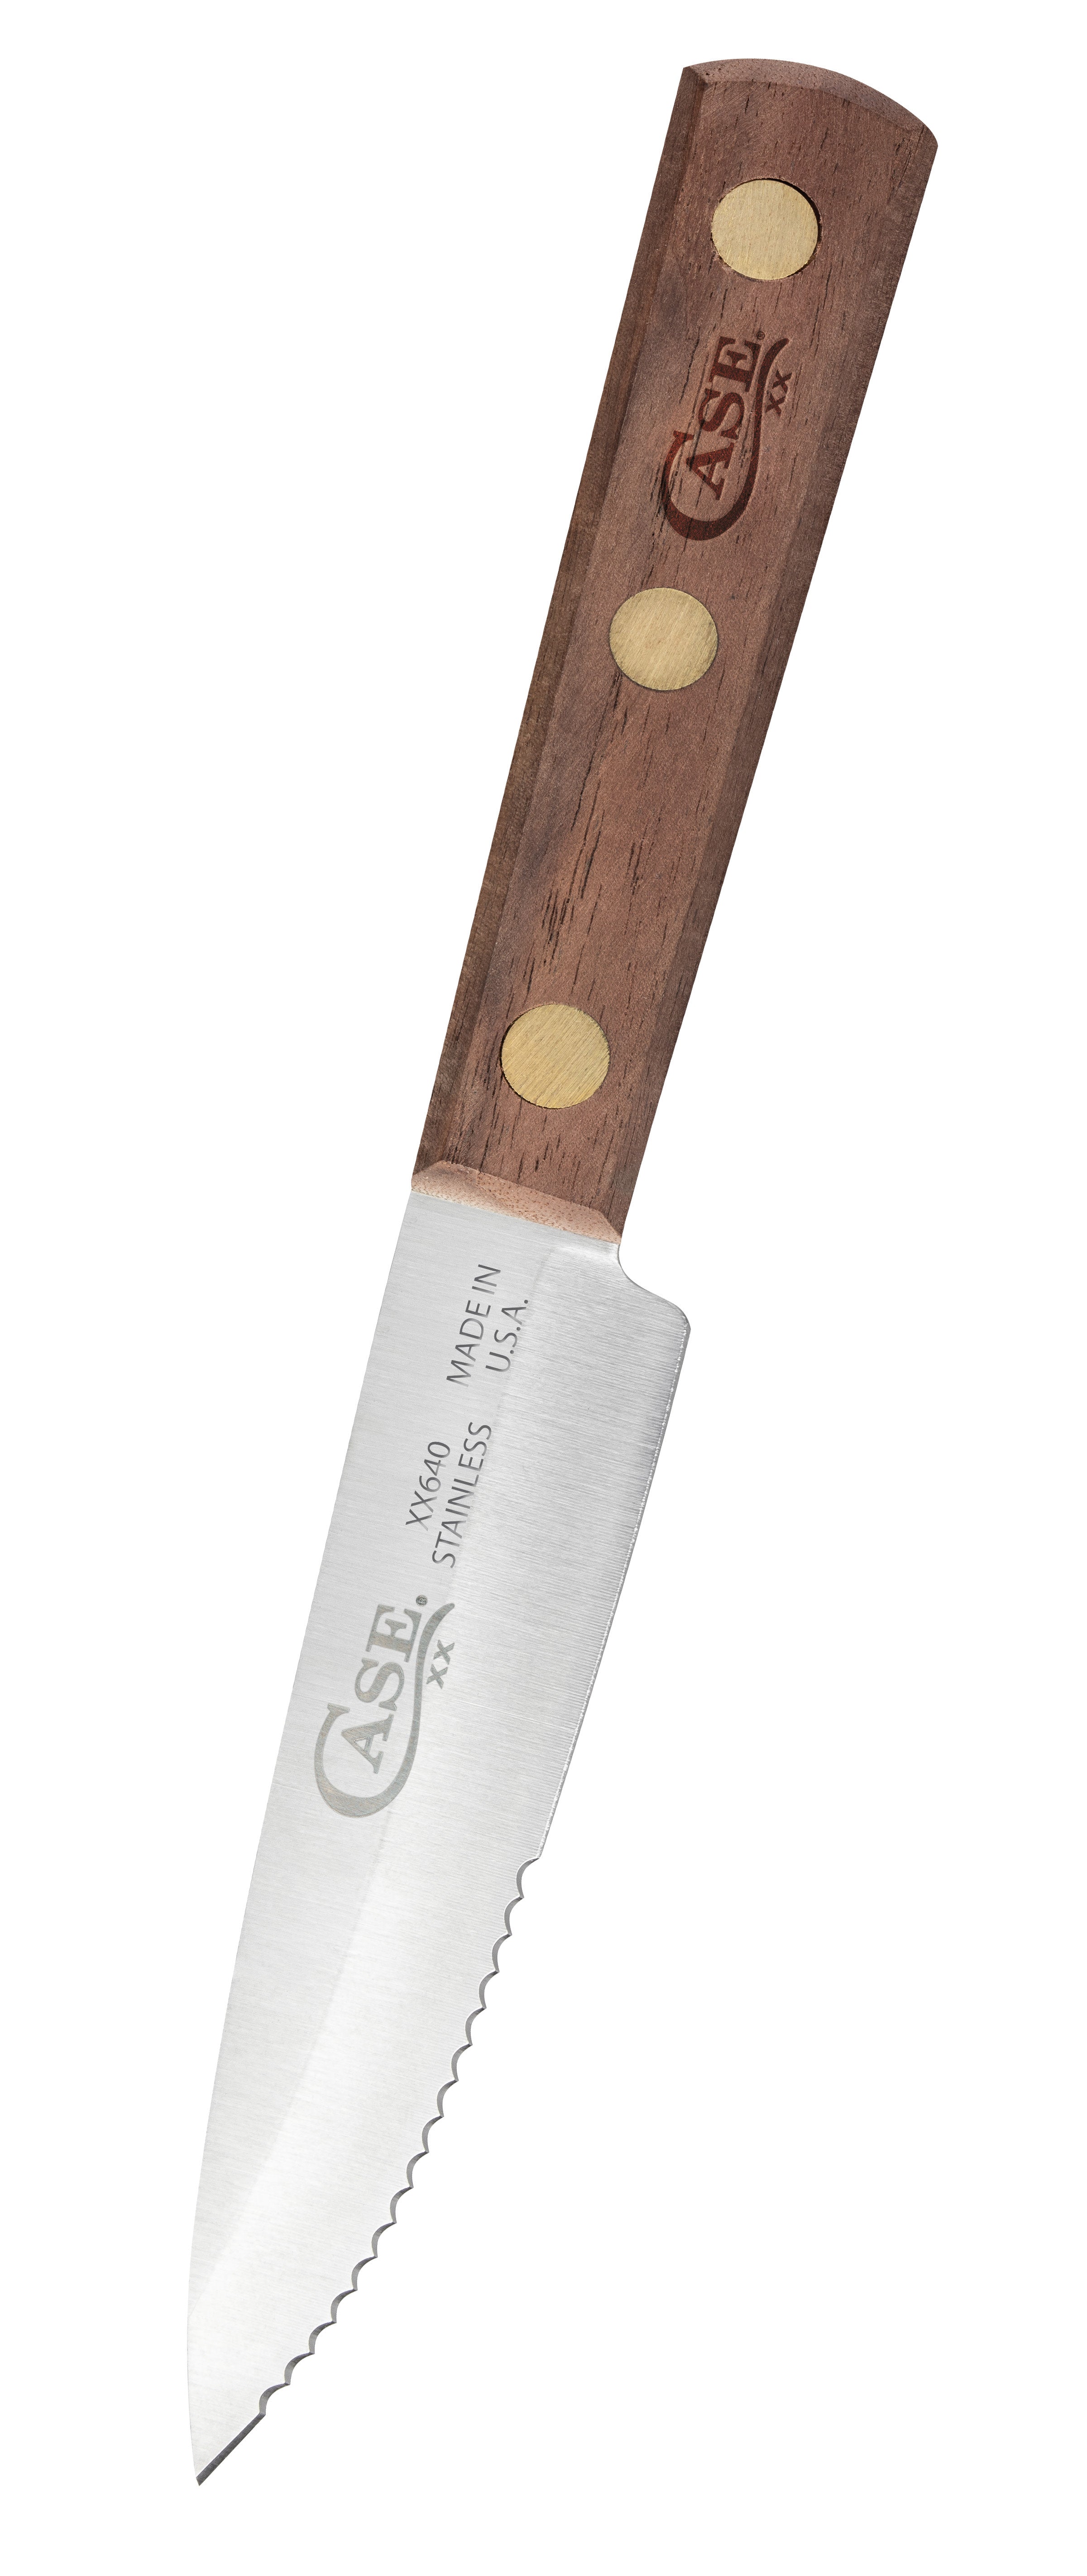 Case XX Kitchen Cutlery Steak Knives Walnut Wood 6-Knife Set 11078